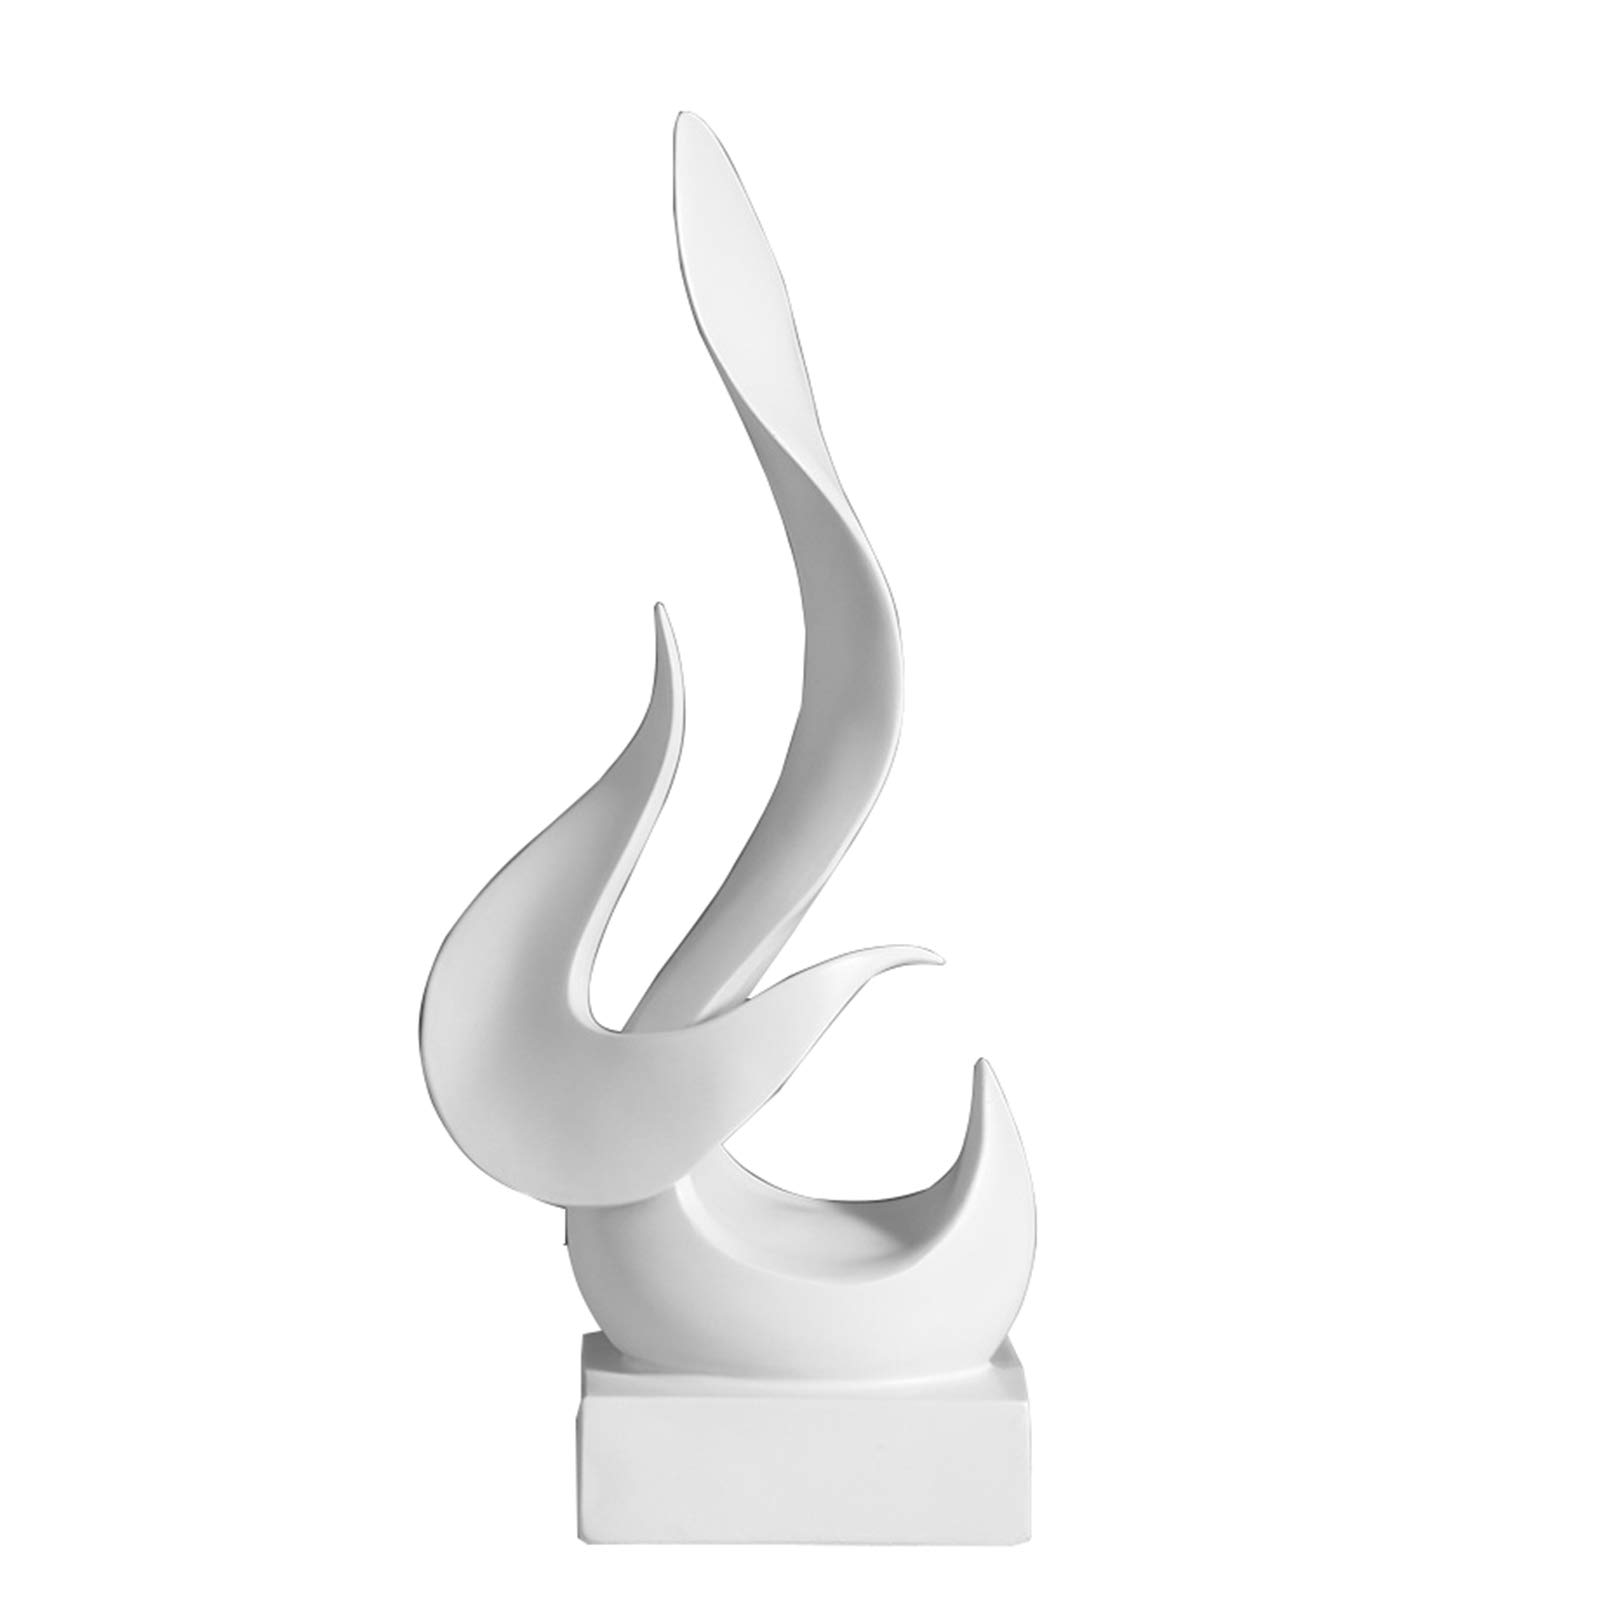 Pevfeciy Deko Skulptur Flamme Form Statue Ornament,Harz 31cm Hoch Skulptur, minimalistische Wohnzimmer deko modern stilvoller Aufsteller für Weinschrank Café Hotel Büro Statuen Und Skulpturen,Weiß